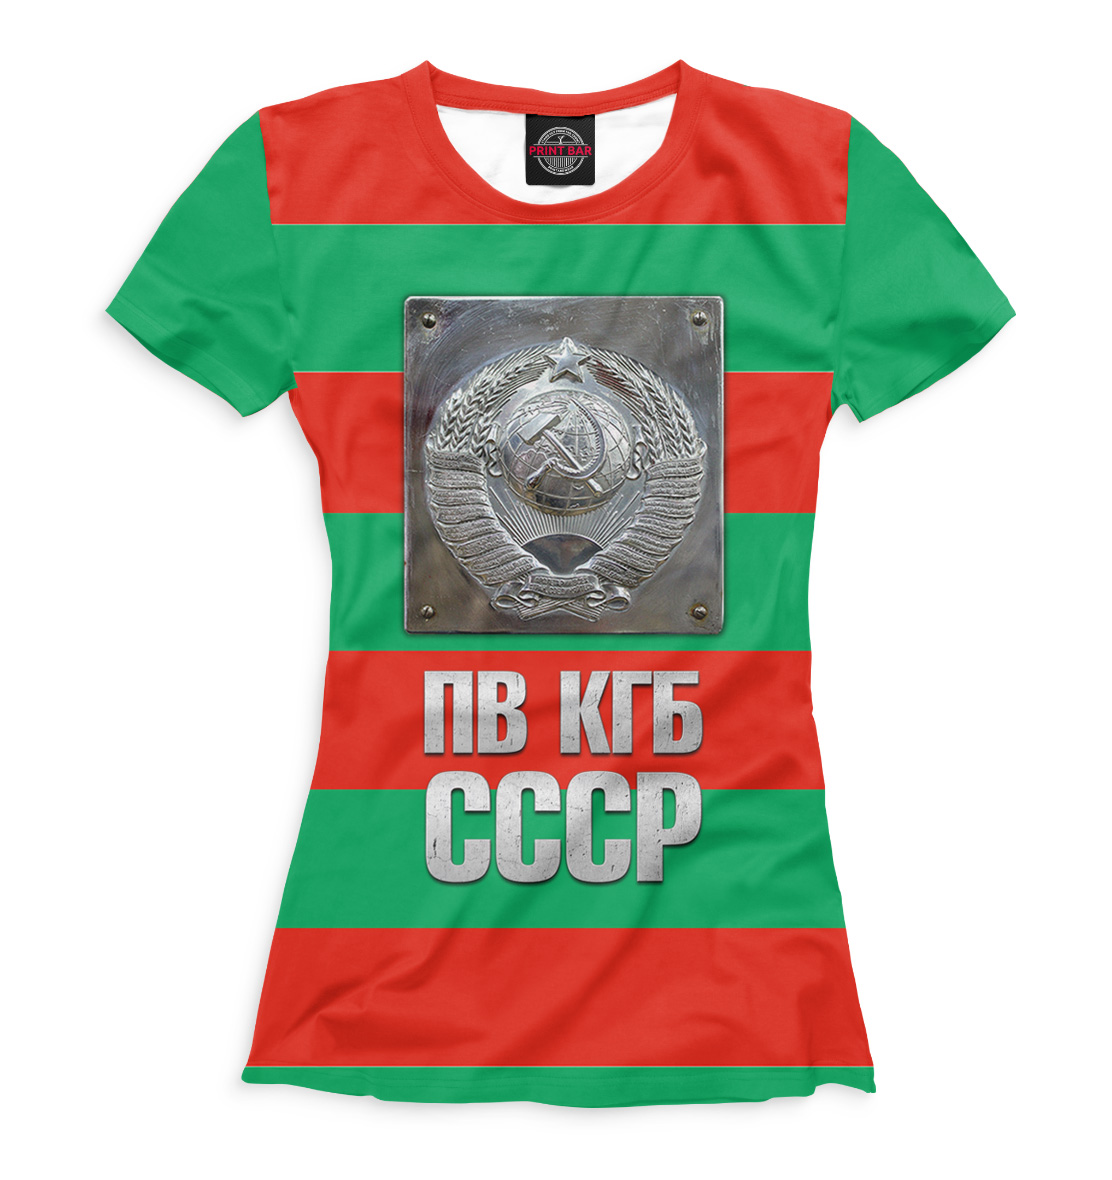 Футболка ПВ КГБ для девочек, артикул: ARM-886586-fut-1mp